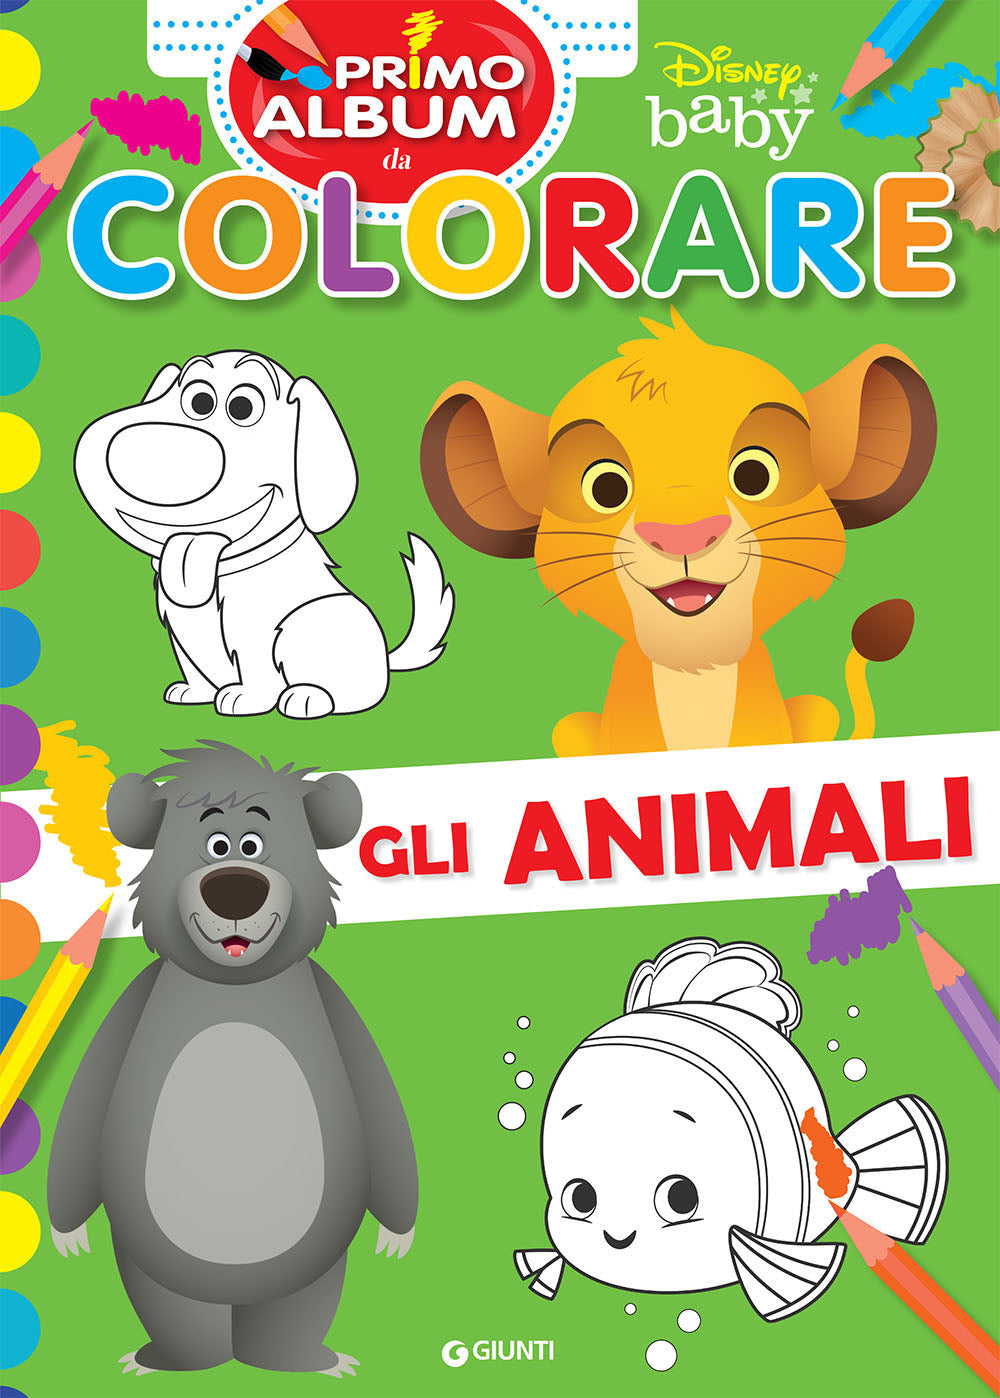 Disney Baby - Primo album da colorare - Gli animali: libro di Walt